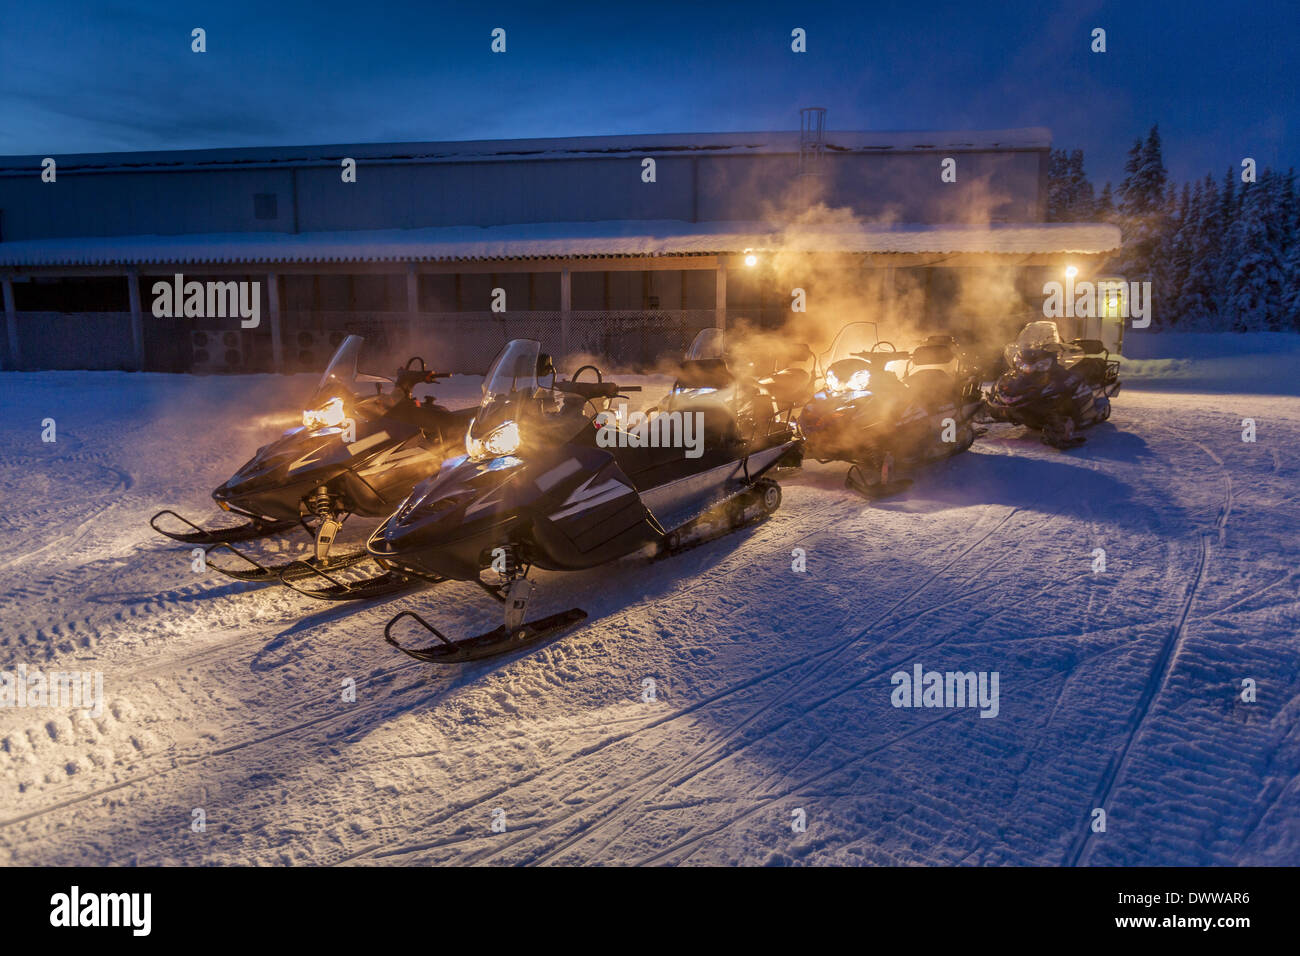 Les motoneiges dans le froid glacial des températures aussi basses que -47 degrés Celsius. La Laponie, Suède Banque D'Images